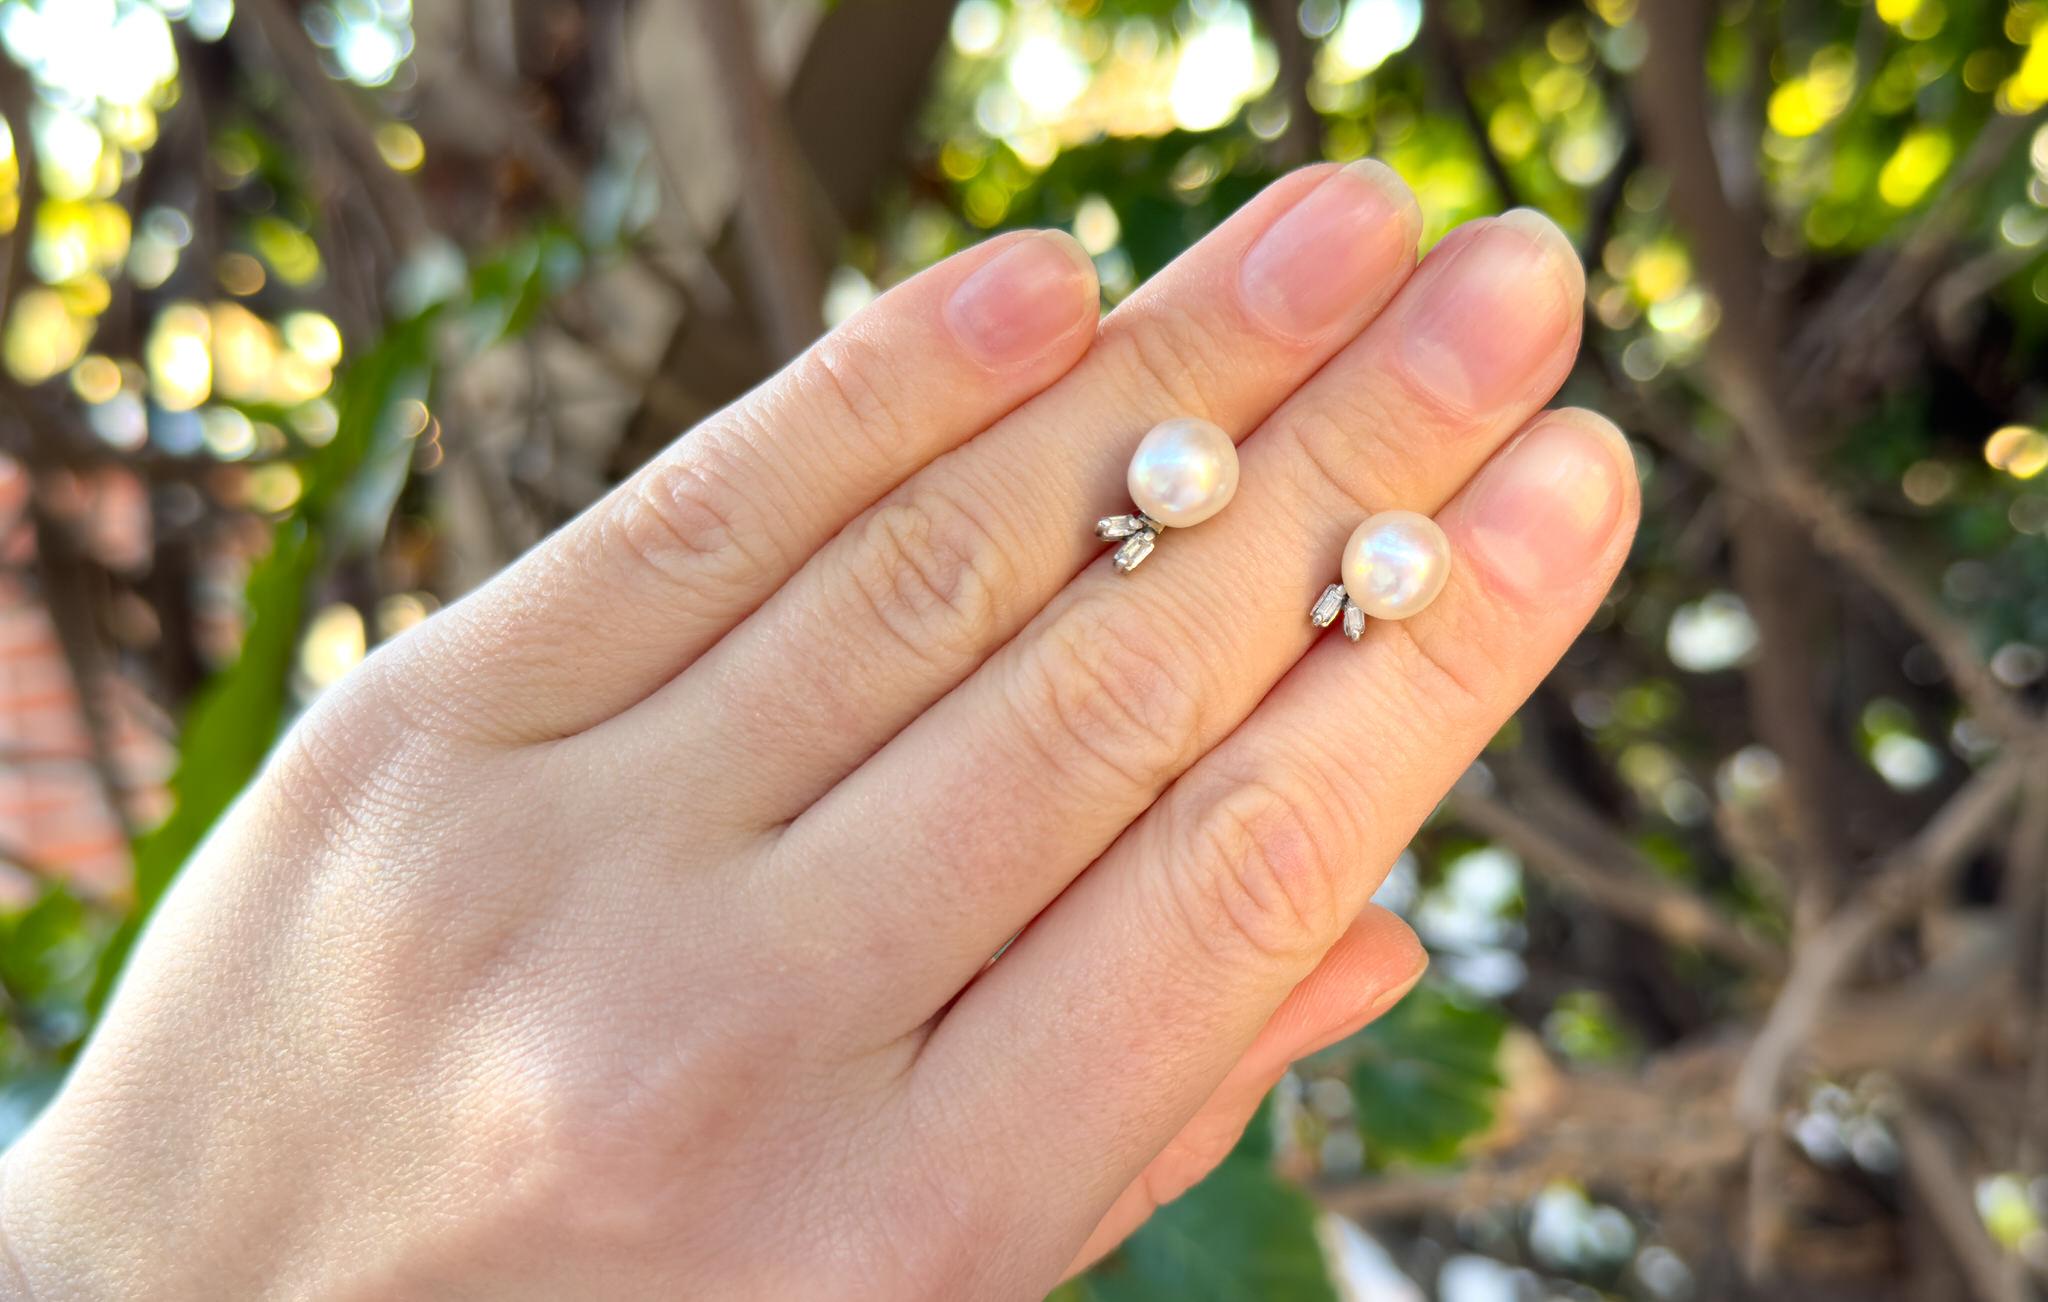 Perles naturelles de 8 mm
Diamants : .10 Carats
(Taille : Coupe ronde, Origine : Nature)
Métal = Or blanc 18K
Longueur : 12 mm
Largeur : 7 mm